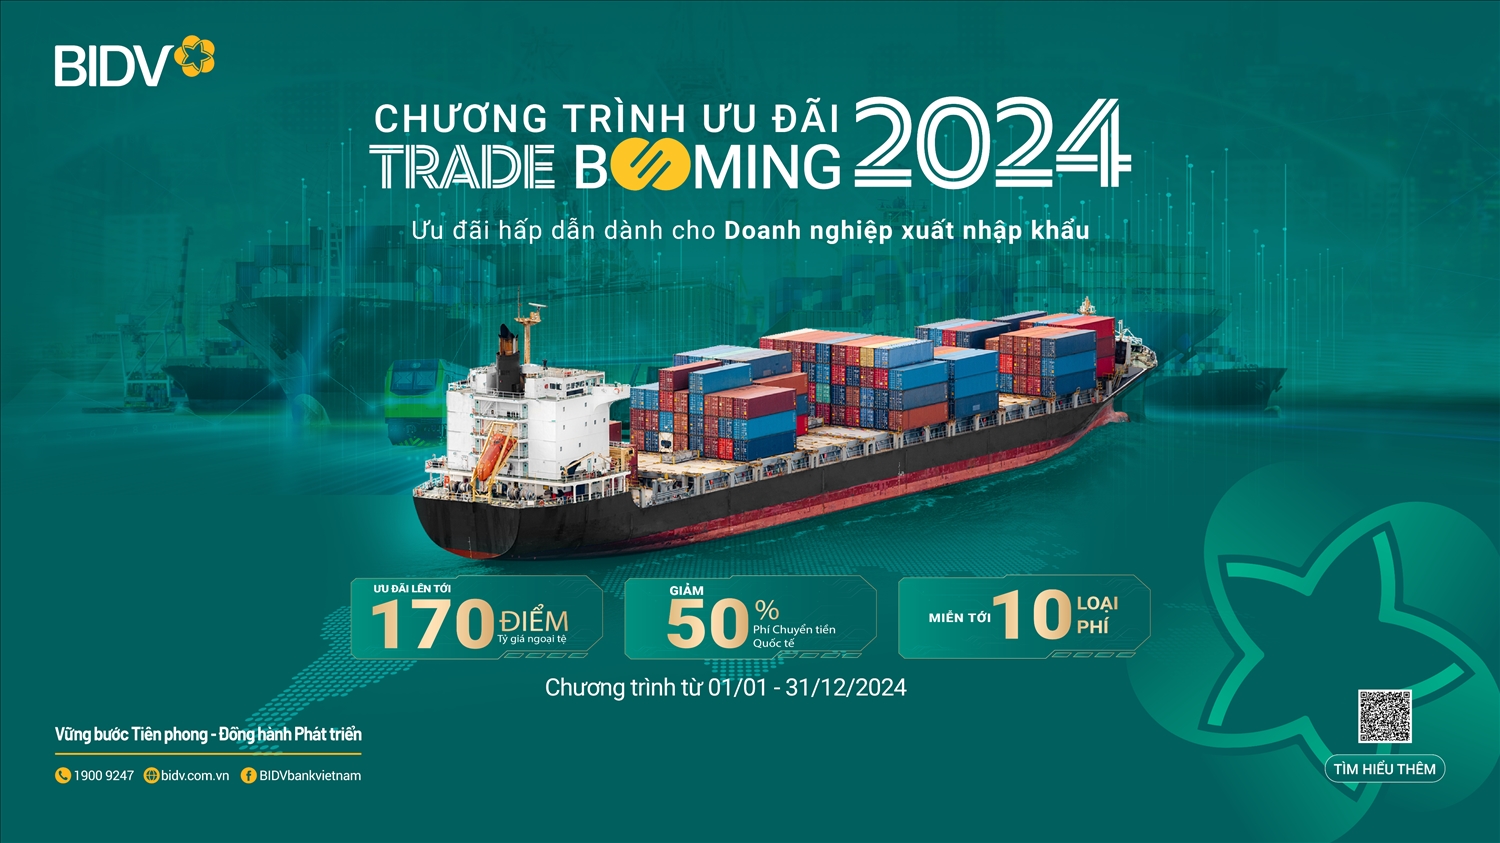 Chương trình Trade Booming với các chính sách ưu việt